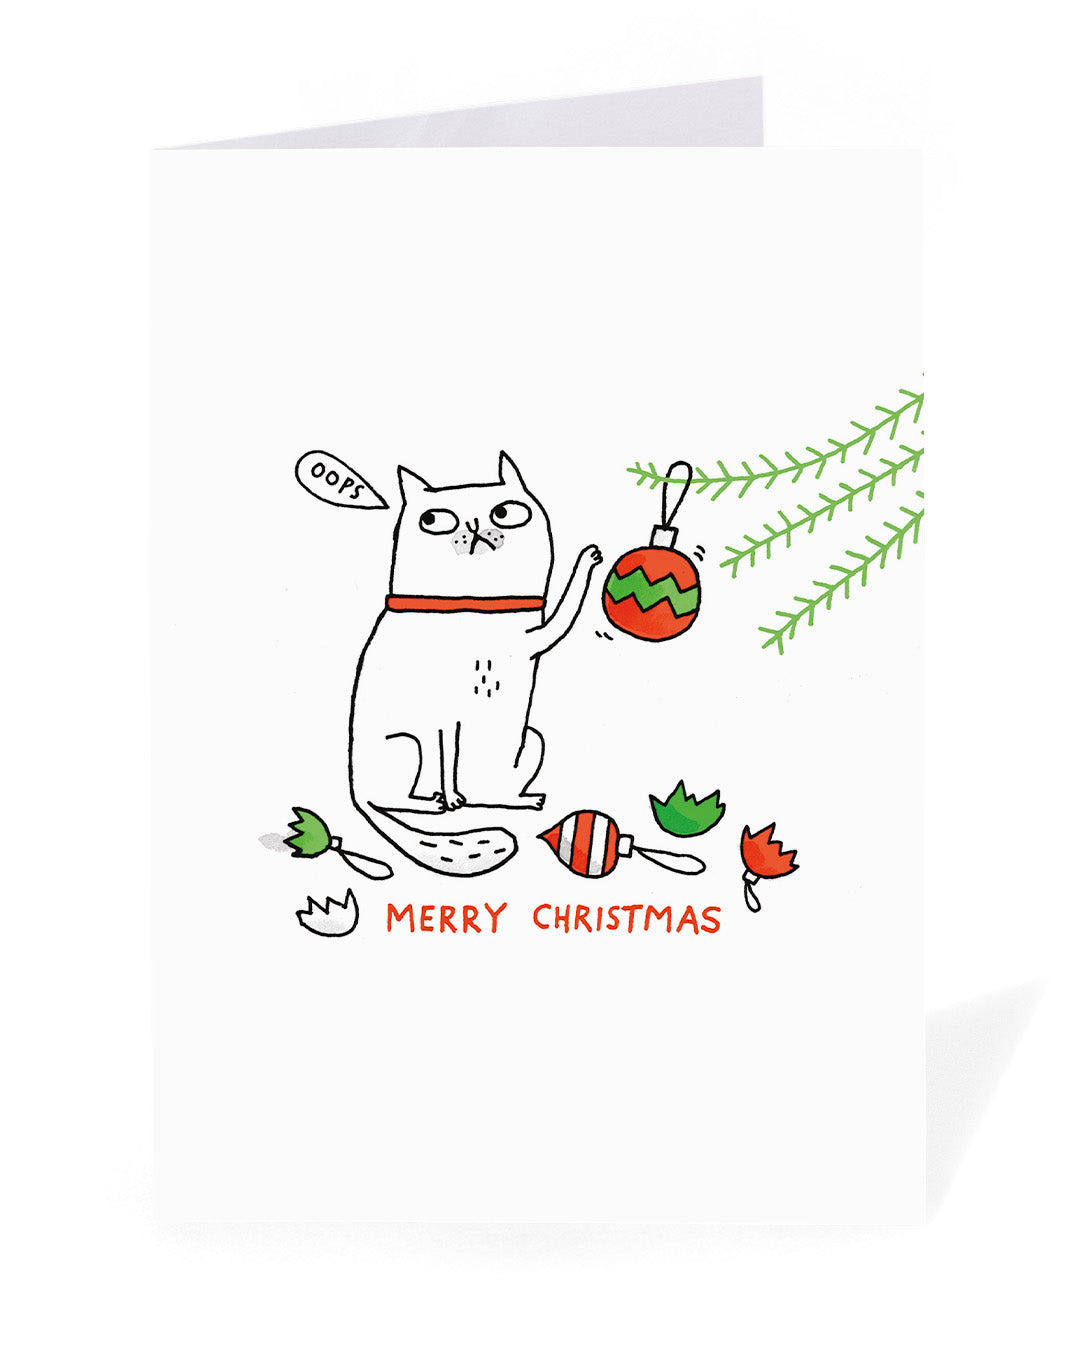 Personalised Oops Cat Christmas Card